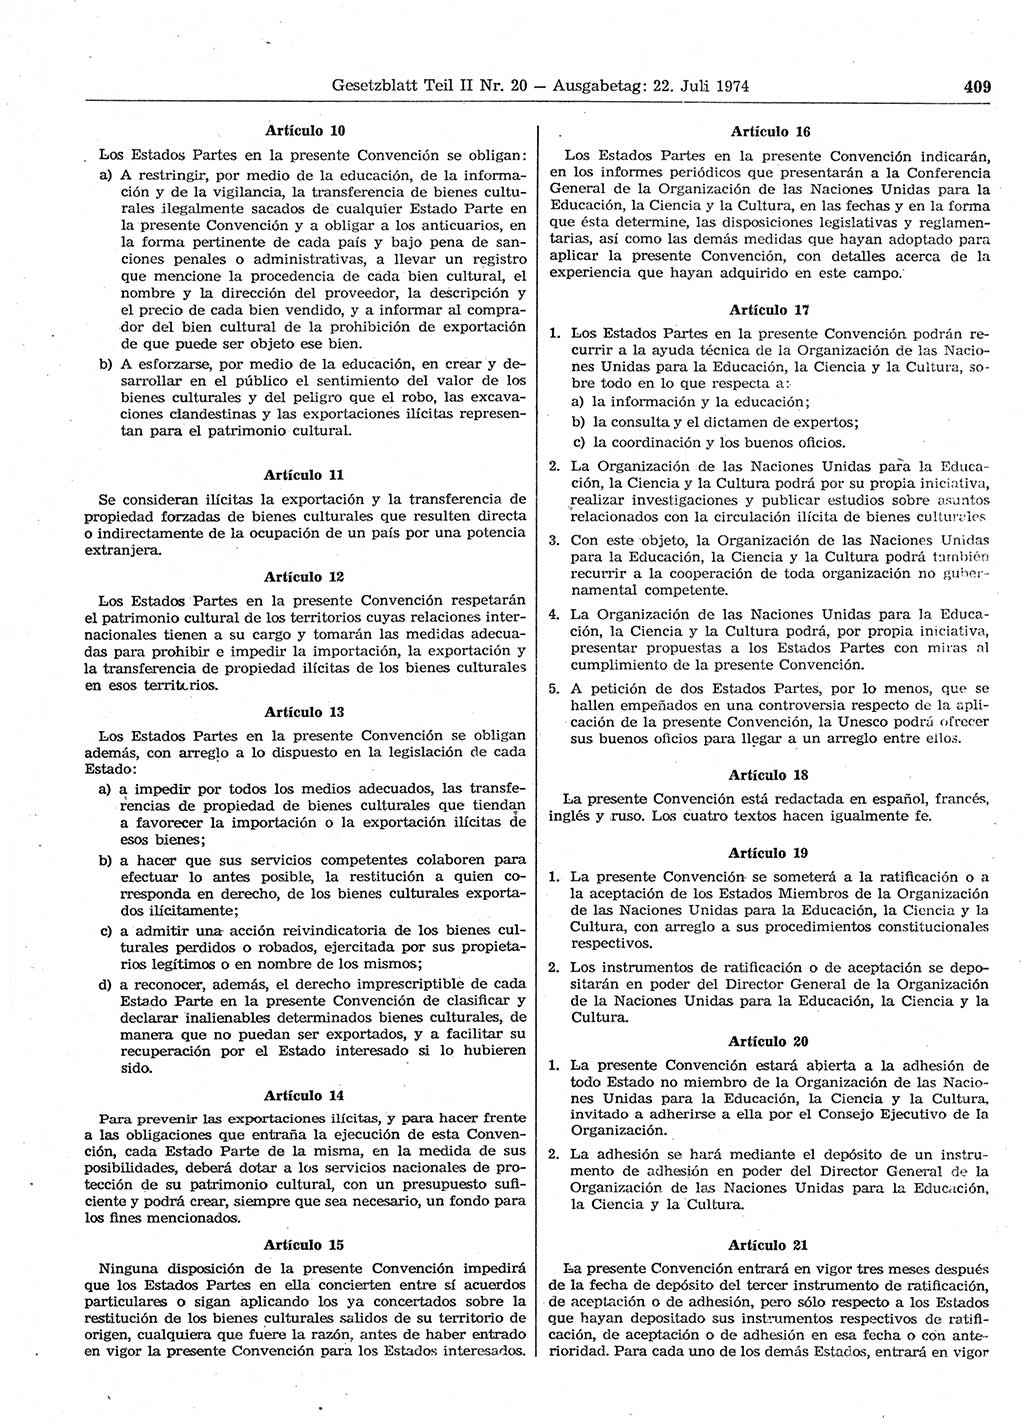 Gesetzblatt (GBl.) der Deutschen Demokratischen Republik (DDR) Teil ⅠⅠ 1974, Seite 409 (GBl. DDR ⅠⅠ 1974, S. 409)